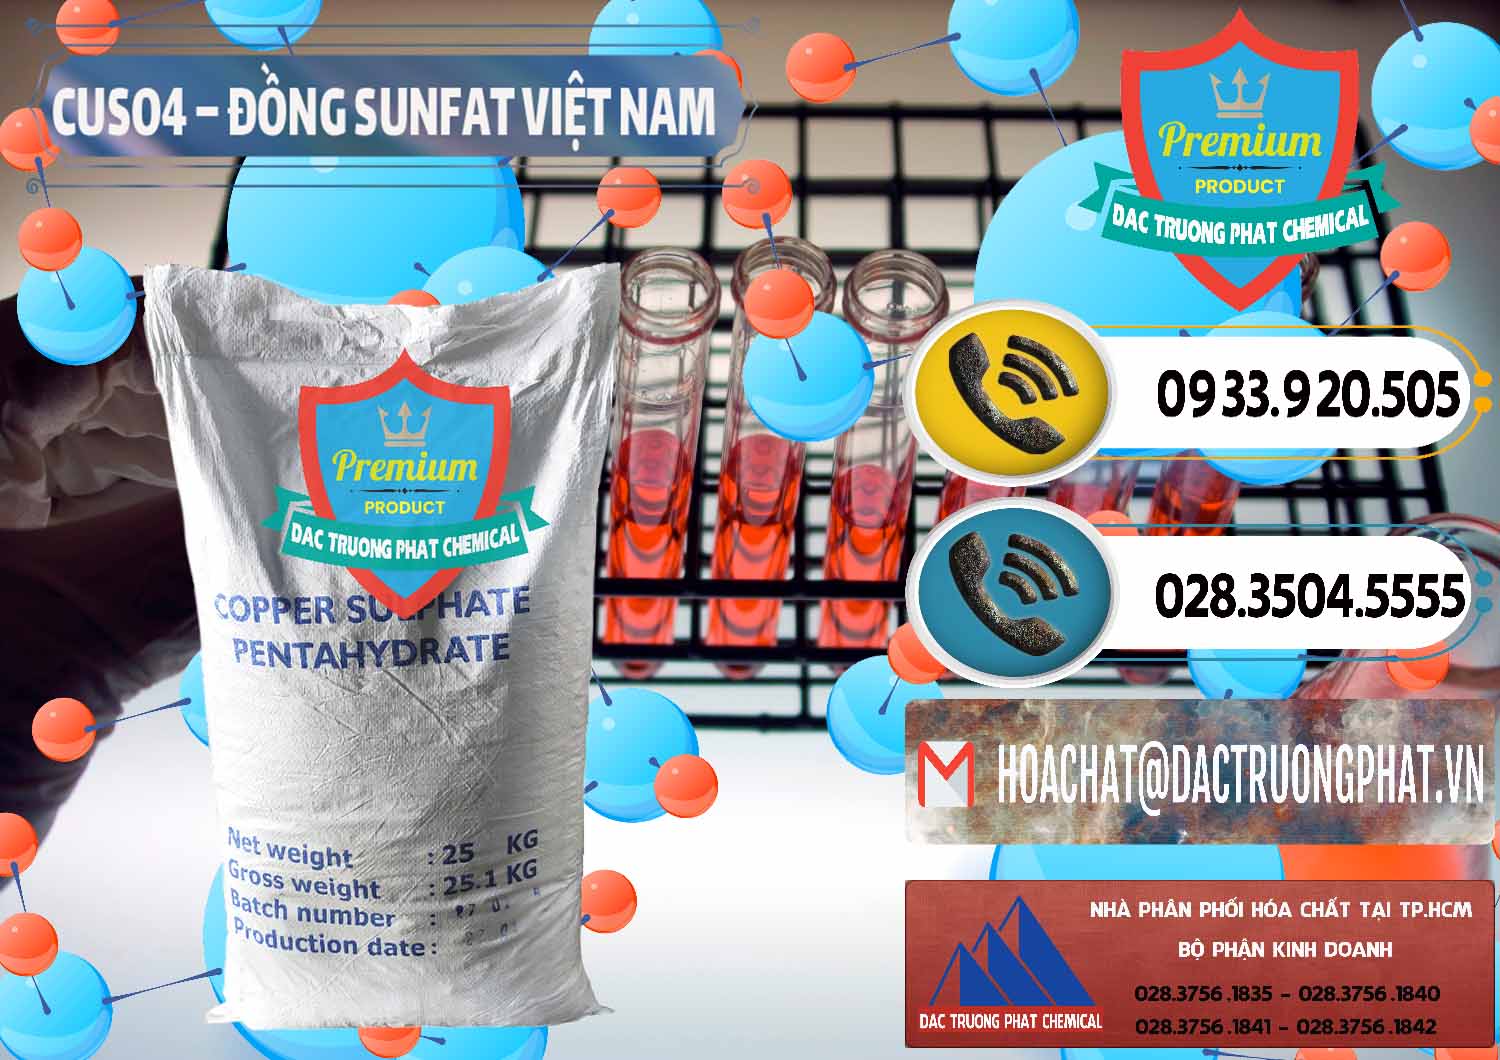 Nơi cung cấp - bán CuSO4 – Đồng Sunfat Dạng Bột Việt Nam - 0196 - Cty phân phối và bán hóa chất tại TP.HCM - hoachatdetnhuom.vn